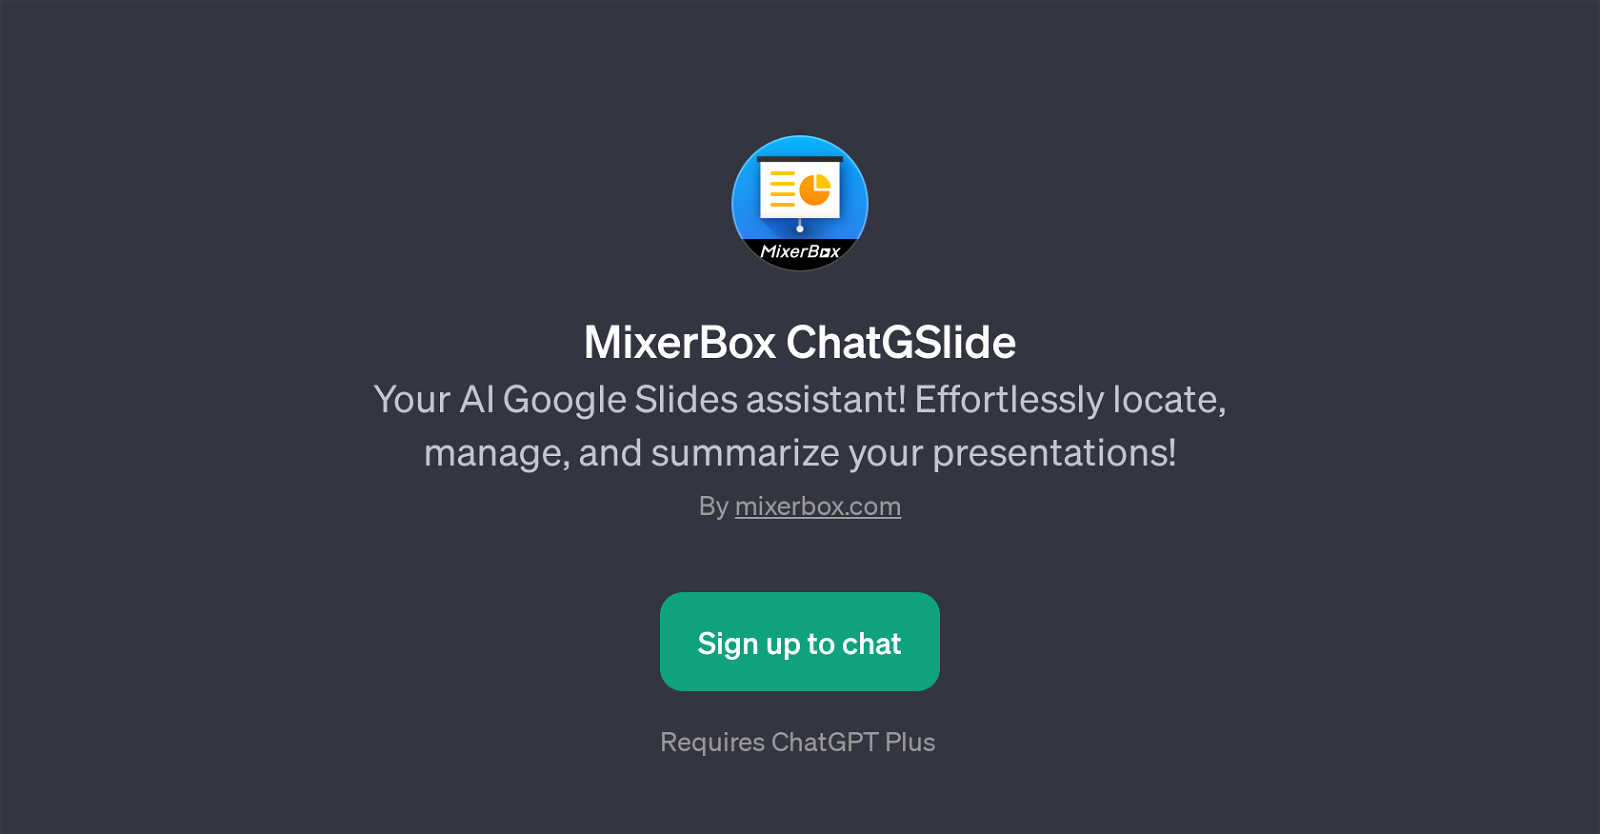 MixerBox ChatGSlide website